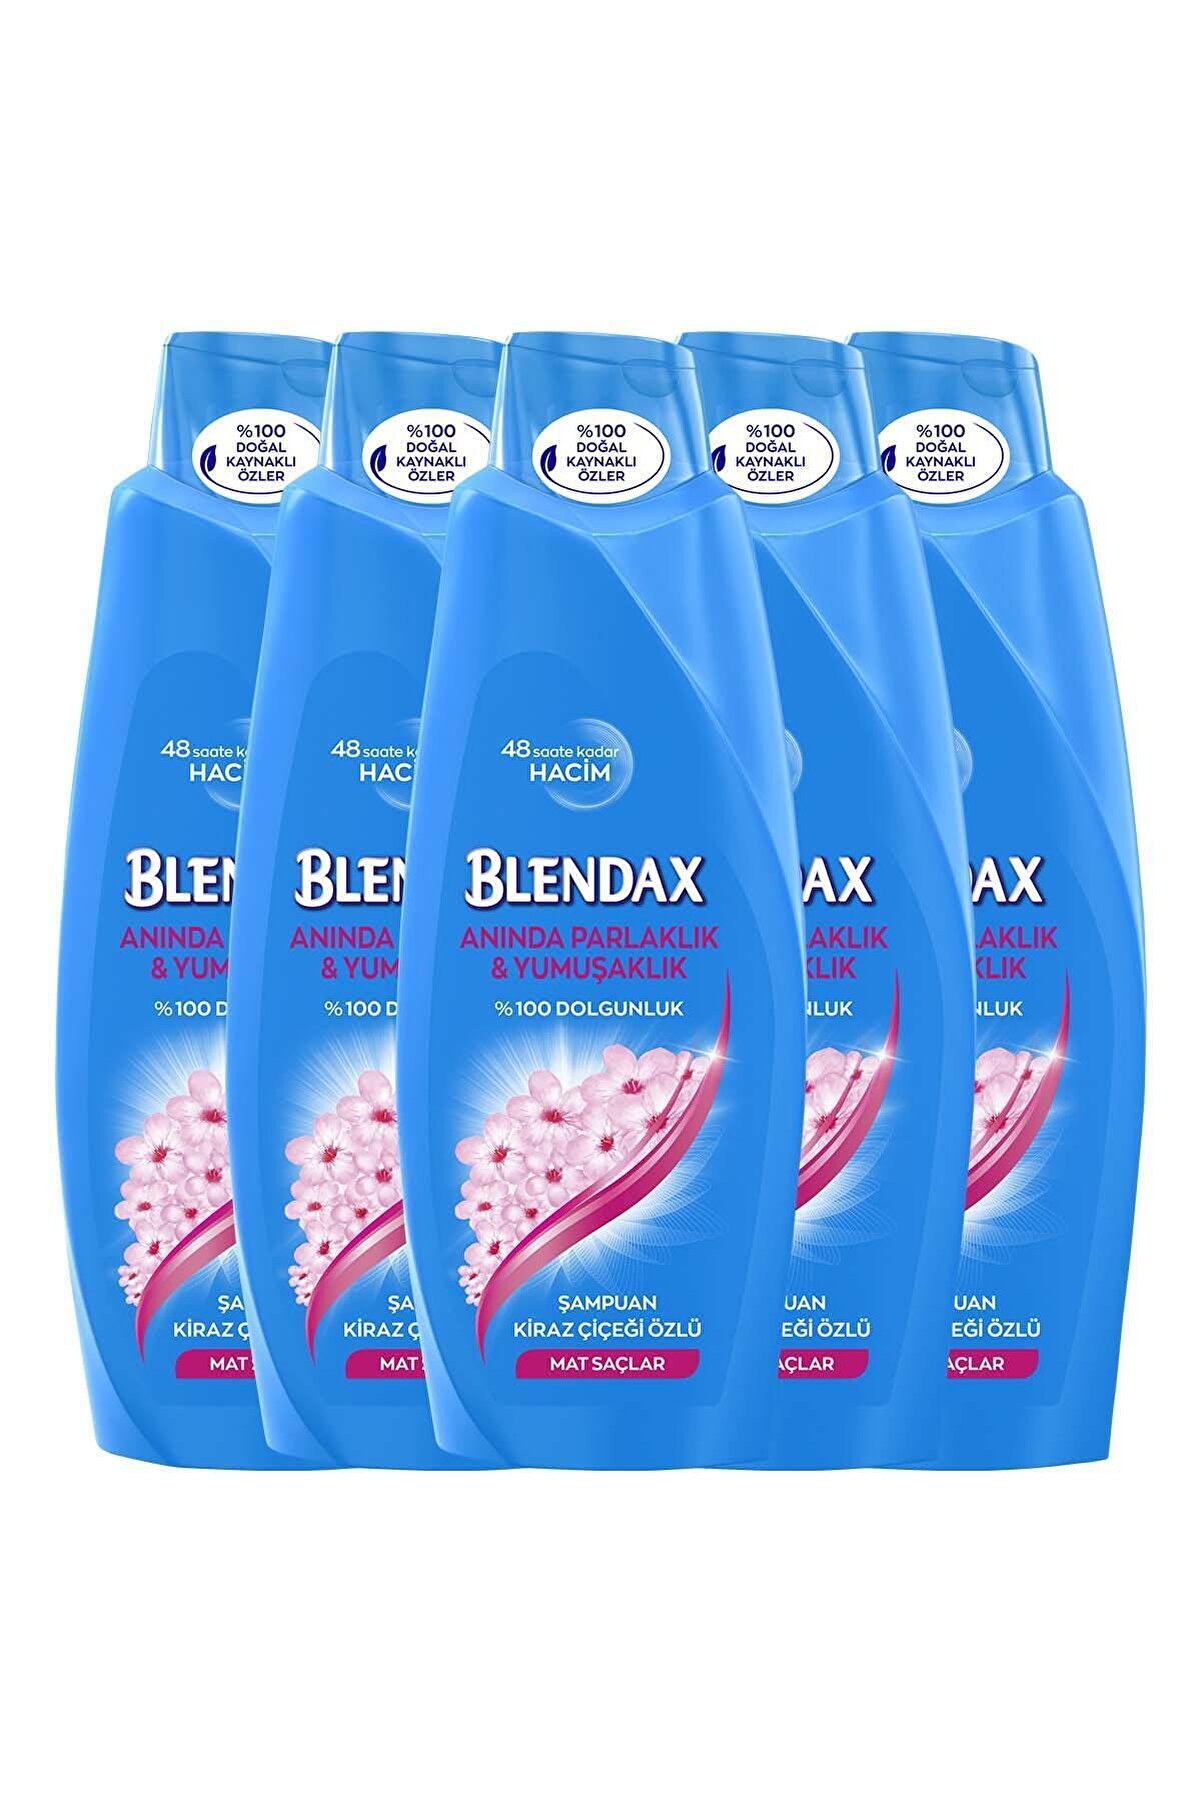 Blendax Kiraz Çiçeği Özlü Şampuan 550 ml x 5